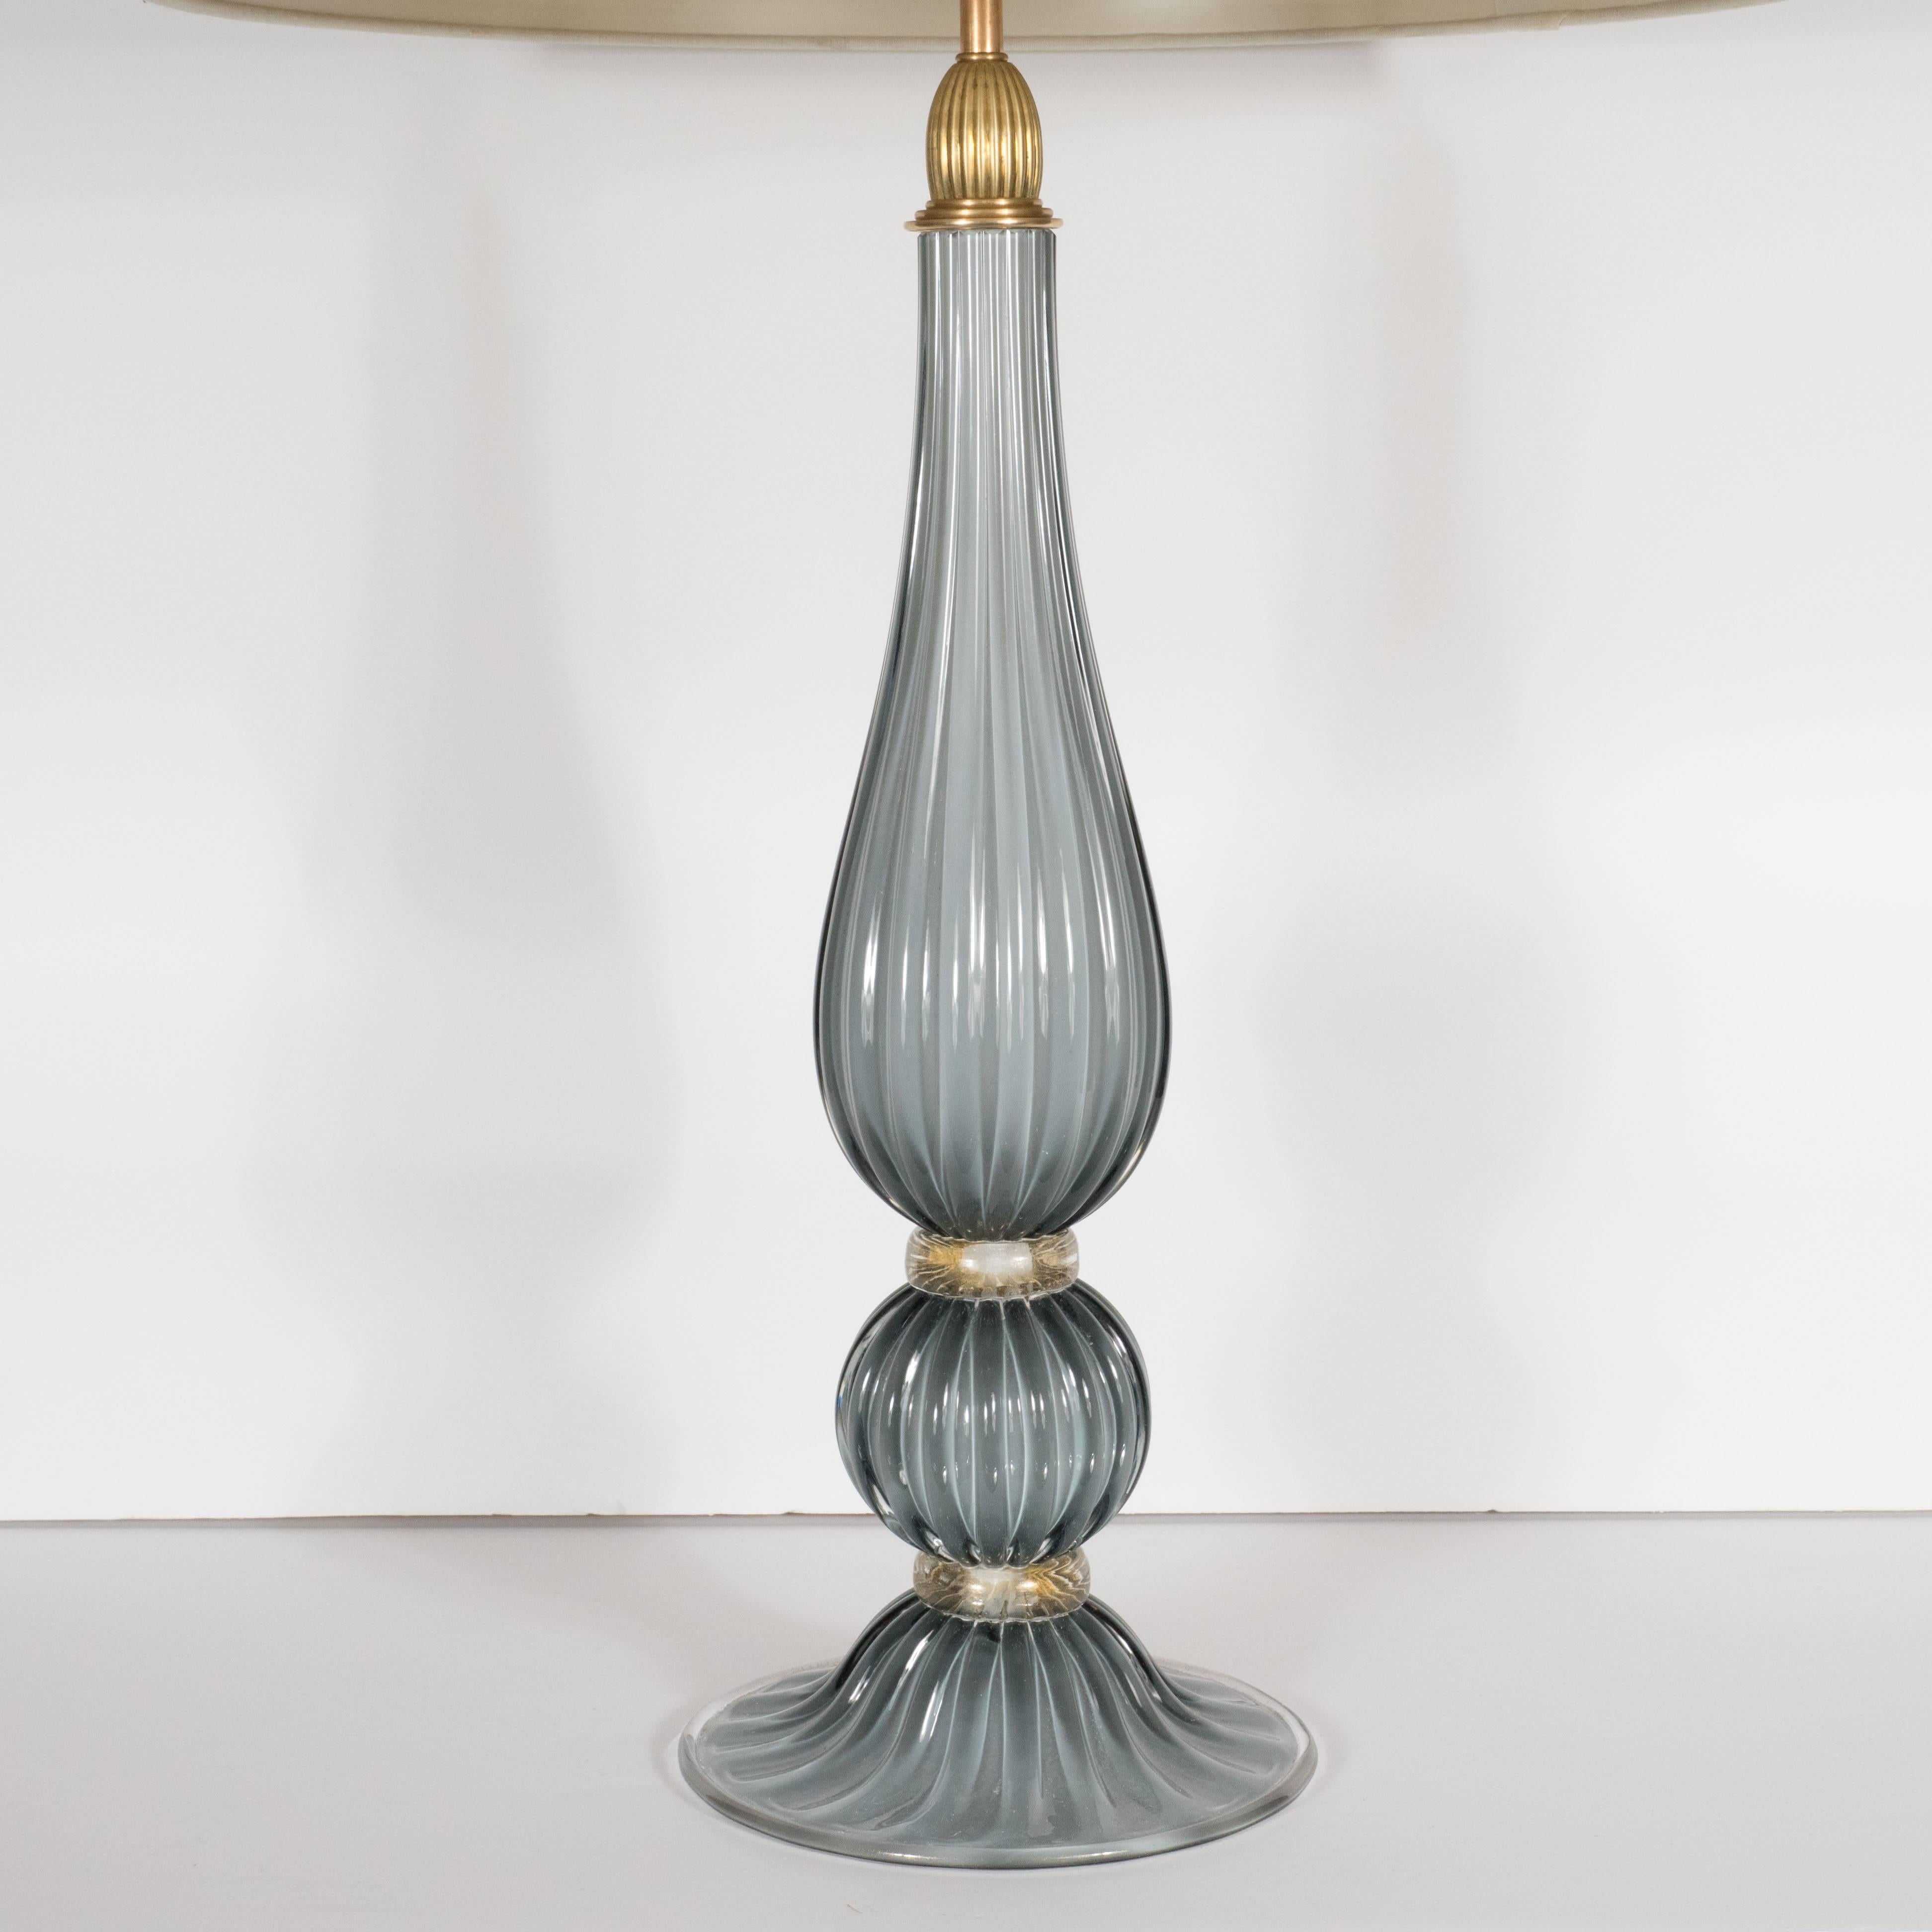 Cette paire raffinée de lampes de table modernistes a été soufflée à la main à Murano, en Italie - les îles situées au large de Venise sont réputées depuis des siècles pour leur production de verre de qualité supérieure. Ils présentent des formes